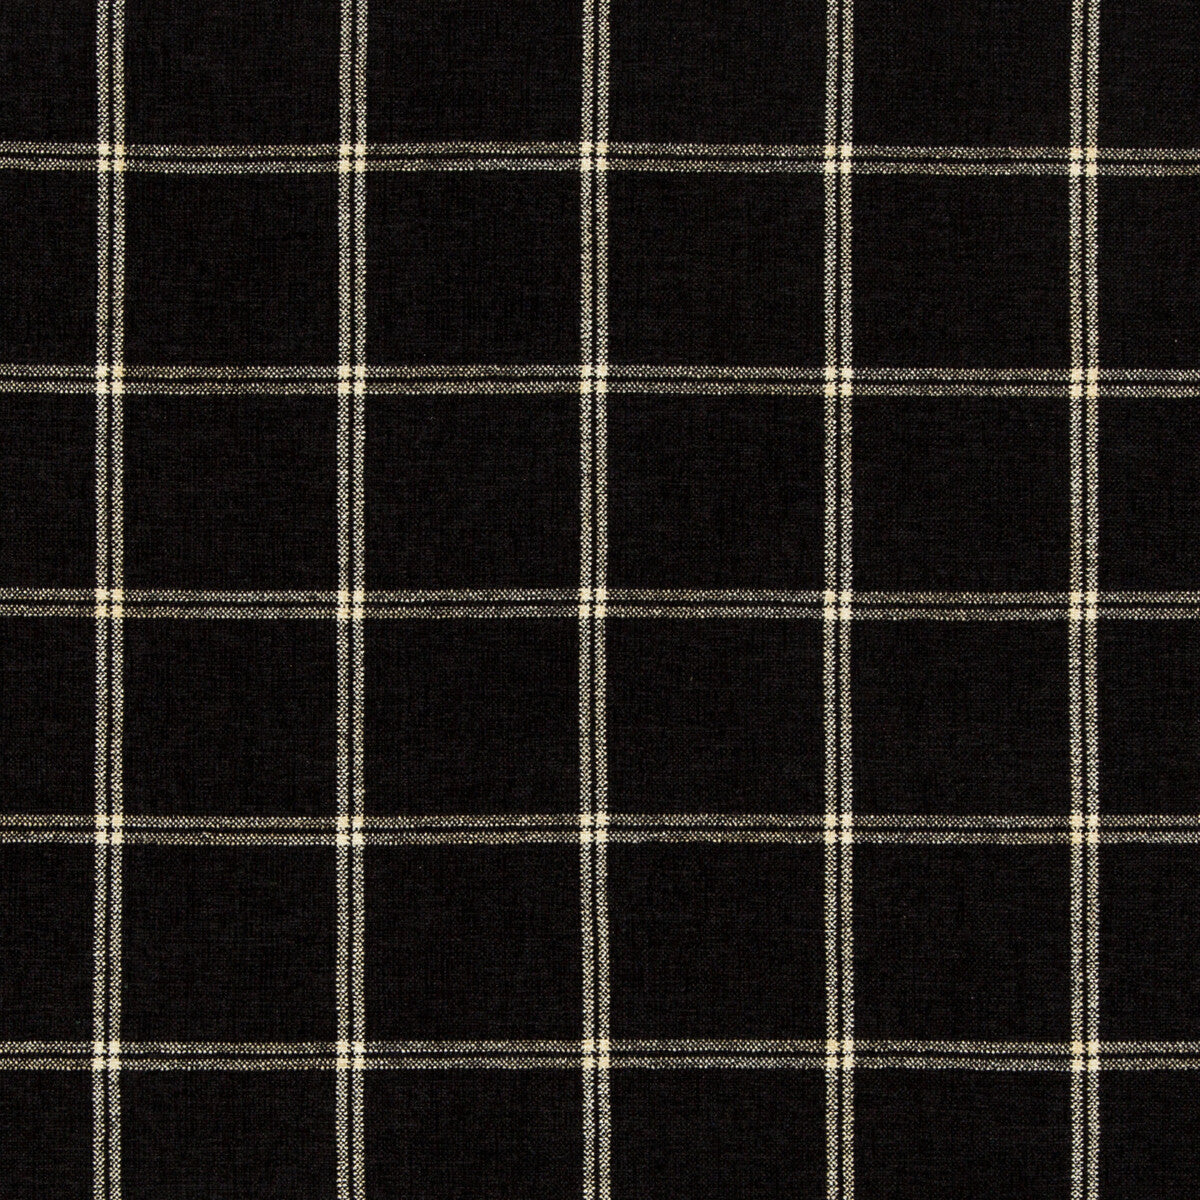 Kravet Basics fabric in 35774-8 color - pattern 35774.8.0 - by Kravet Basics